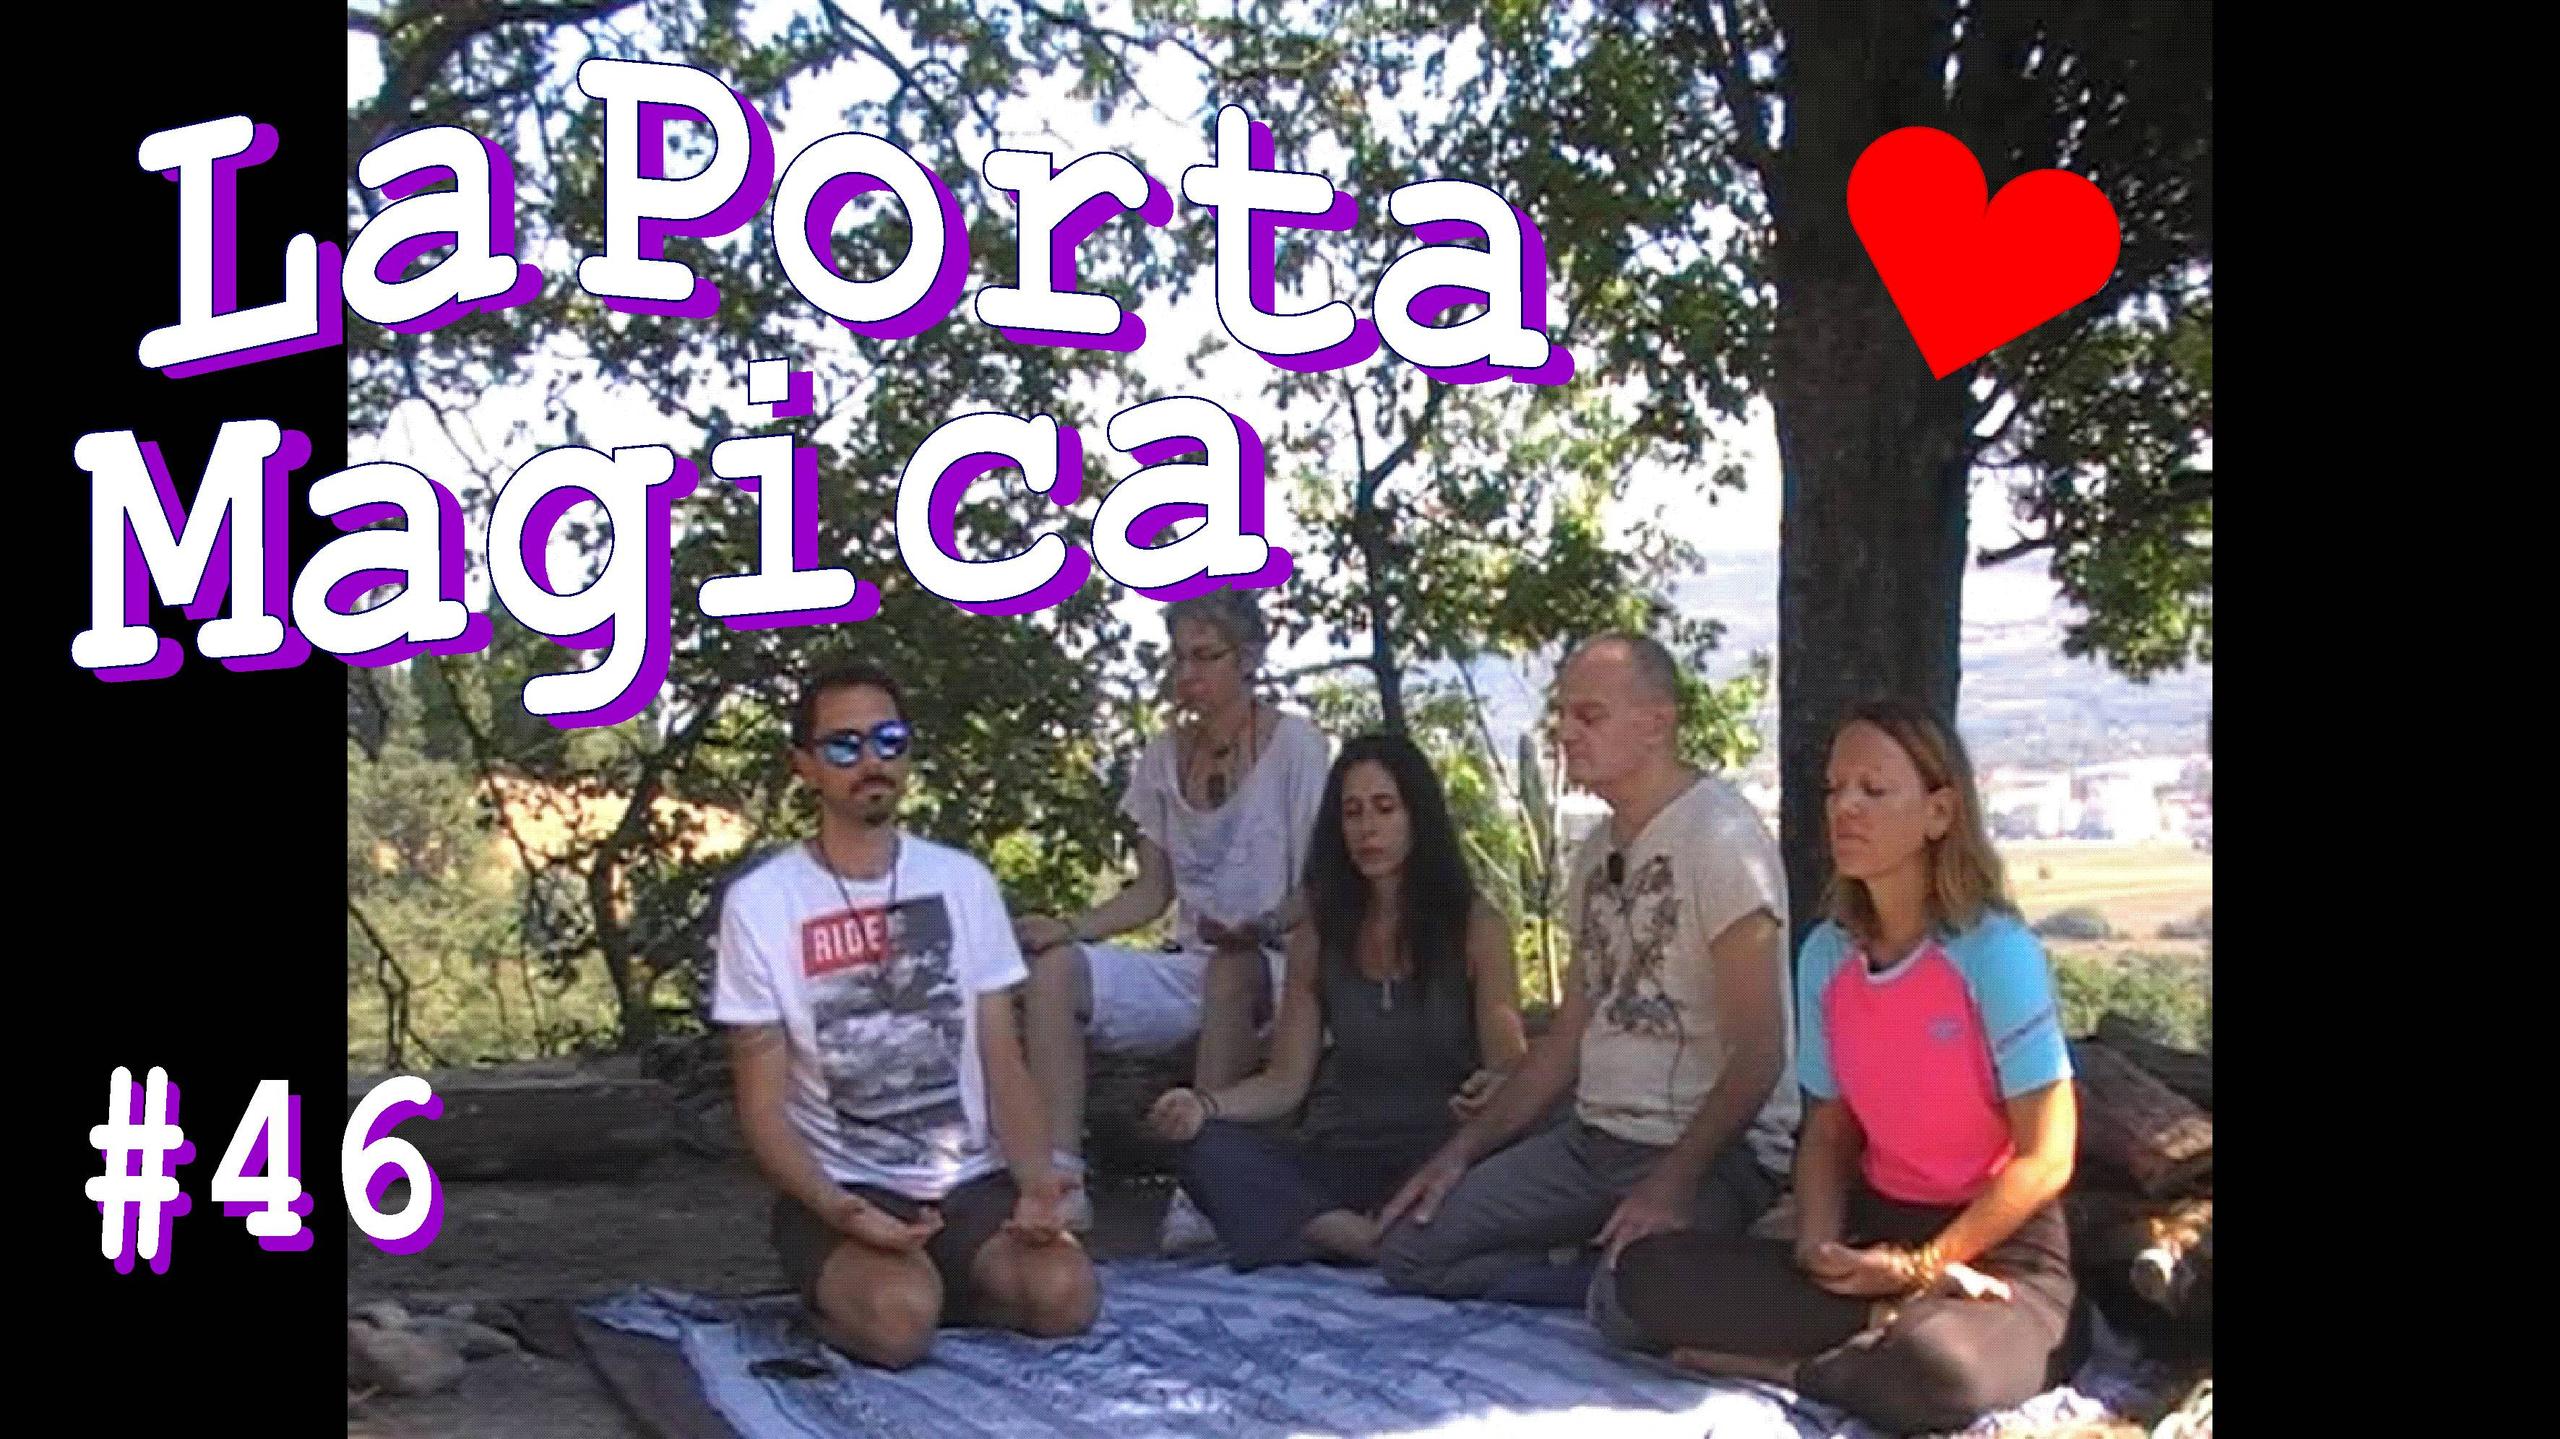 La Porta Magica #46 nella PlayList Youtube "Meditazione E Coscienza All'Aria".